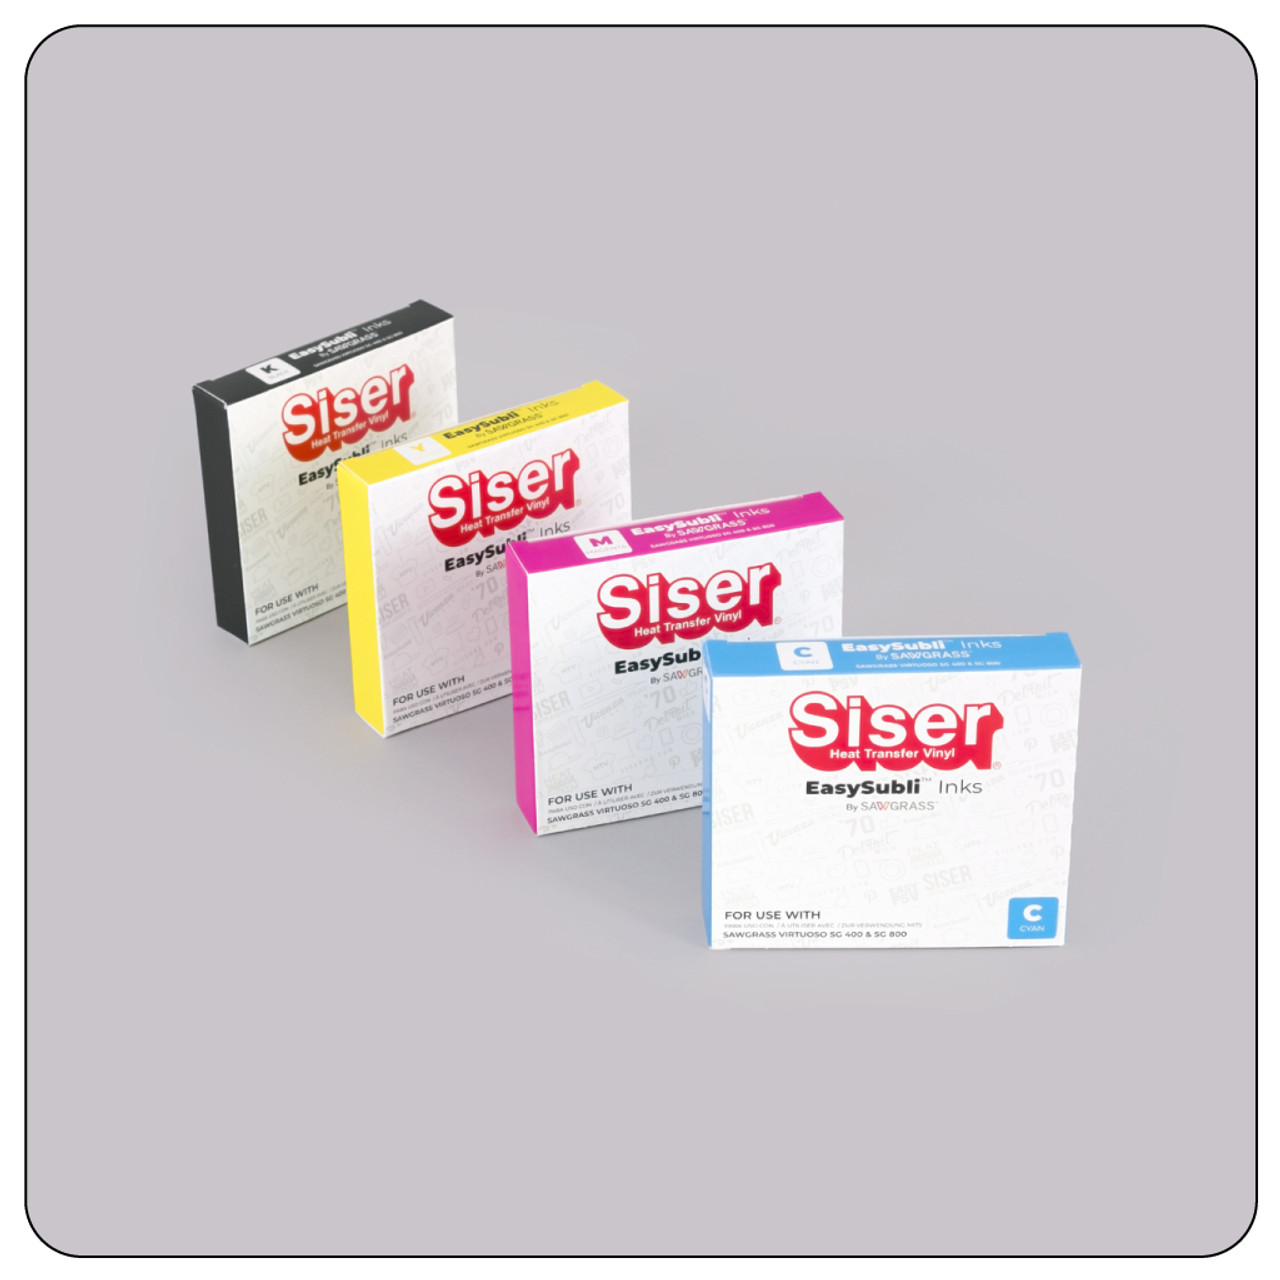 Siser Easy Subli Ink - SG400/SG800 - K- Black - ml / Siser Sawgrass In